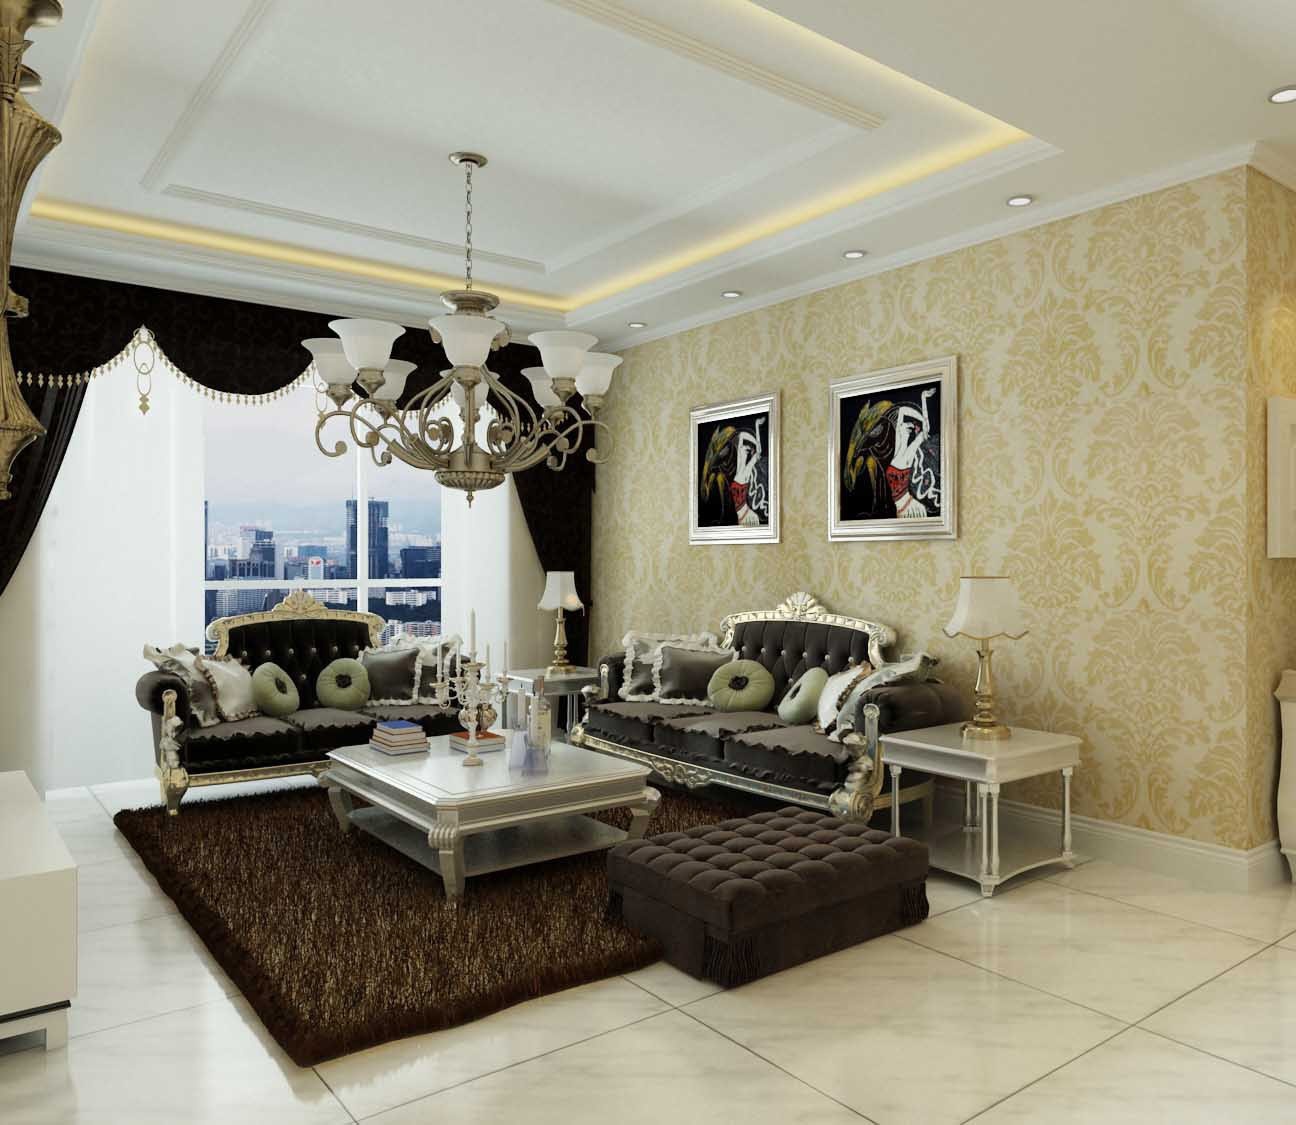 想象国际二期三室两厅简欧风格设计